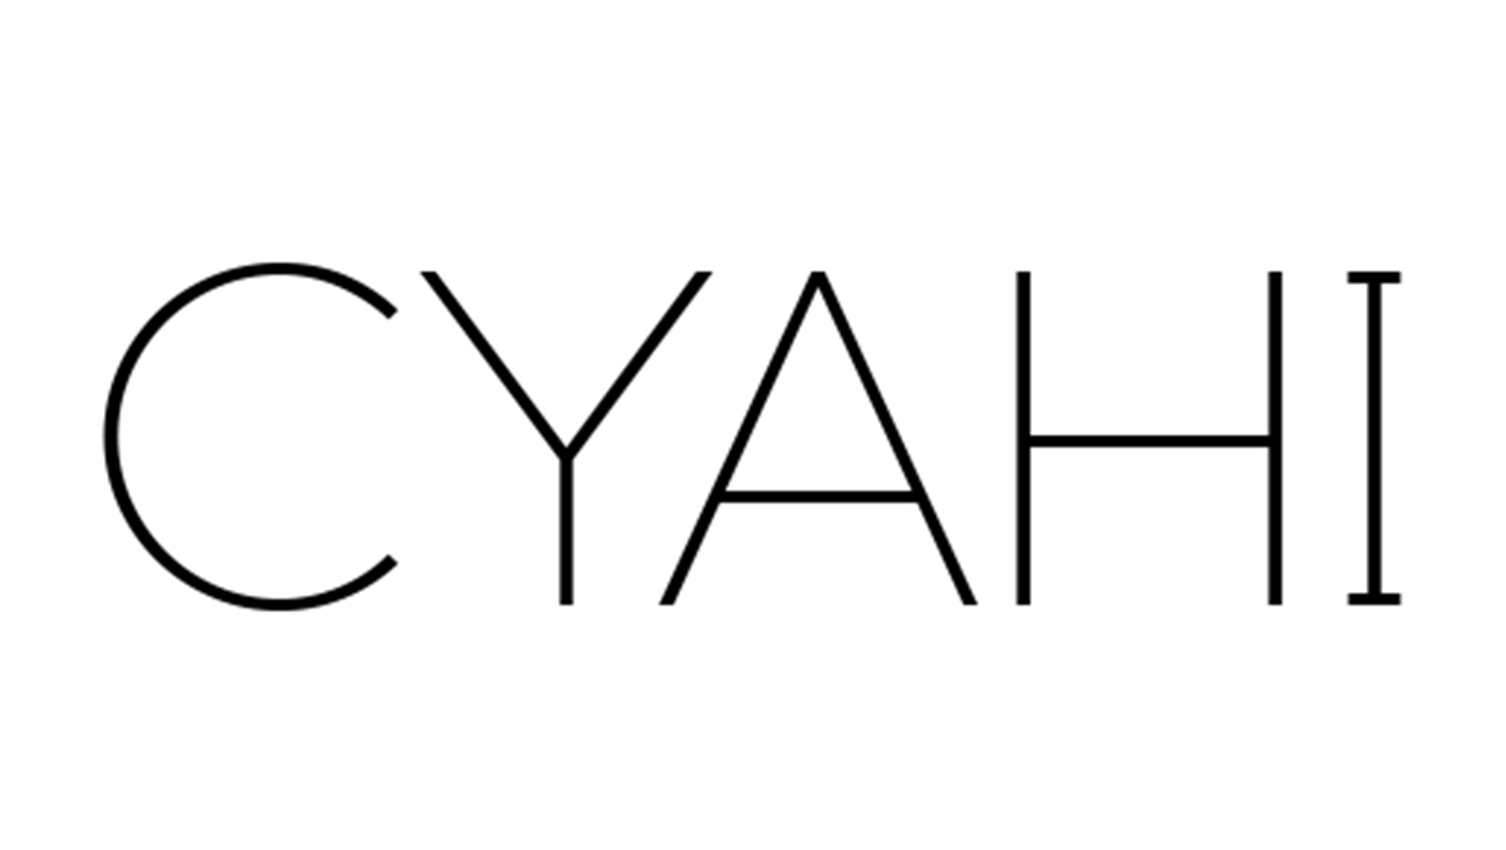 cyahi-com